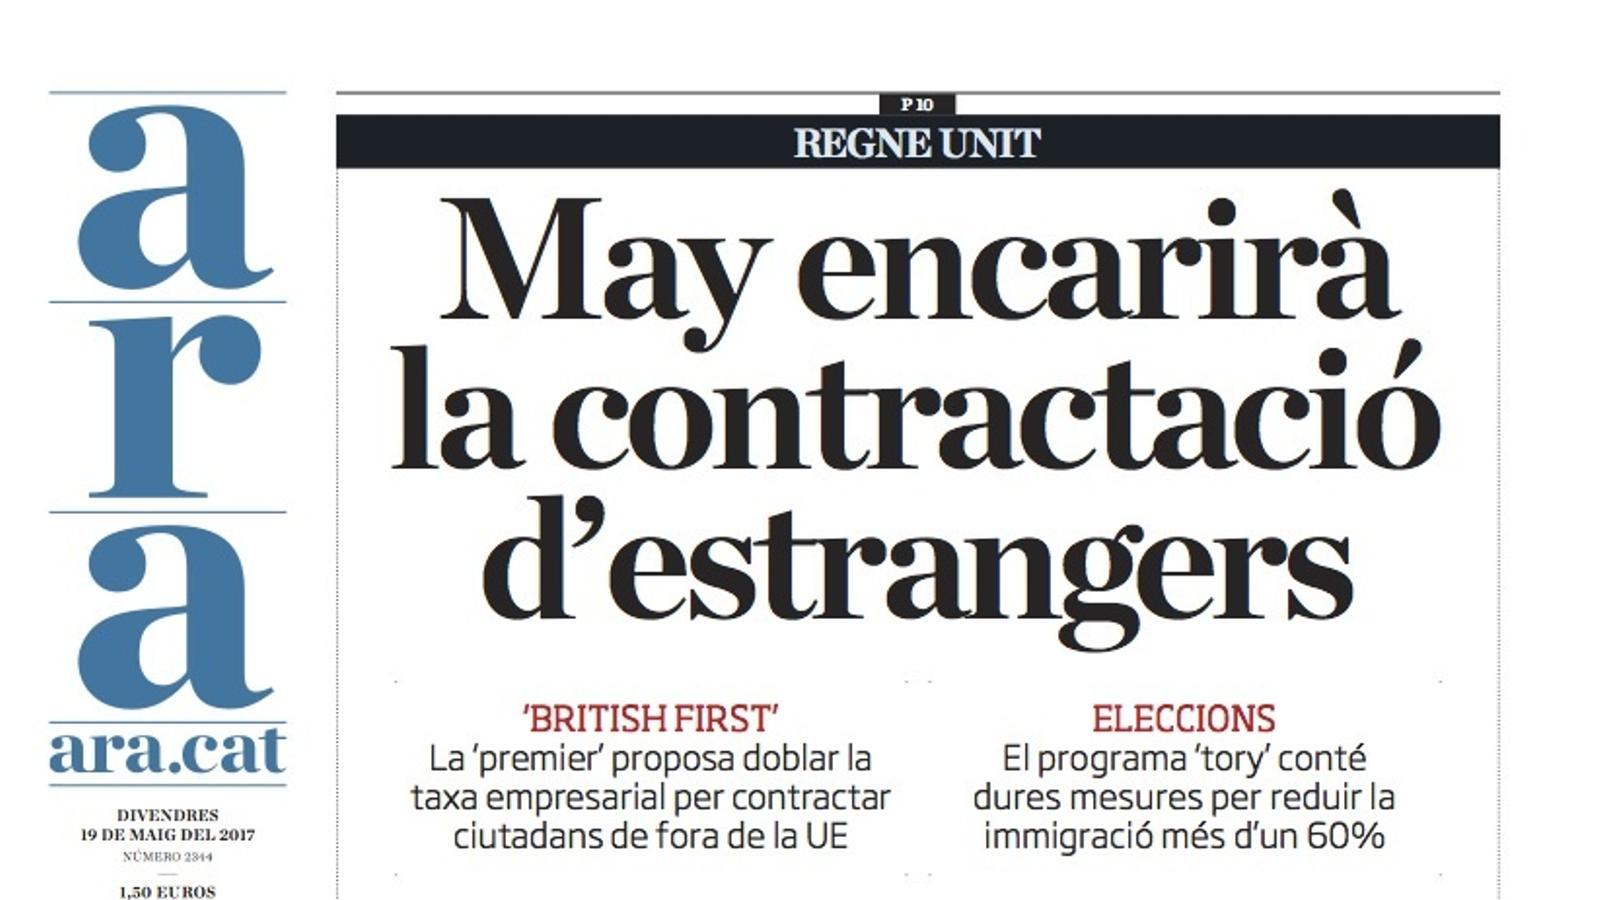 "May encarirà la contractació d'estrangers", portada de l'ARA